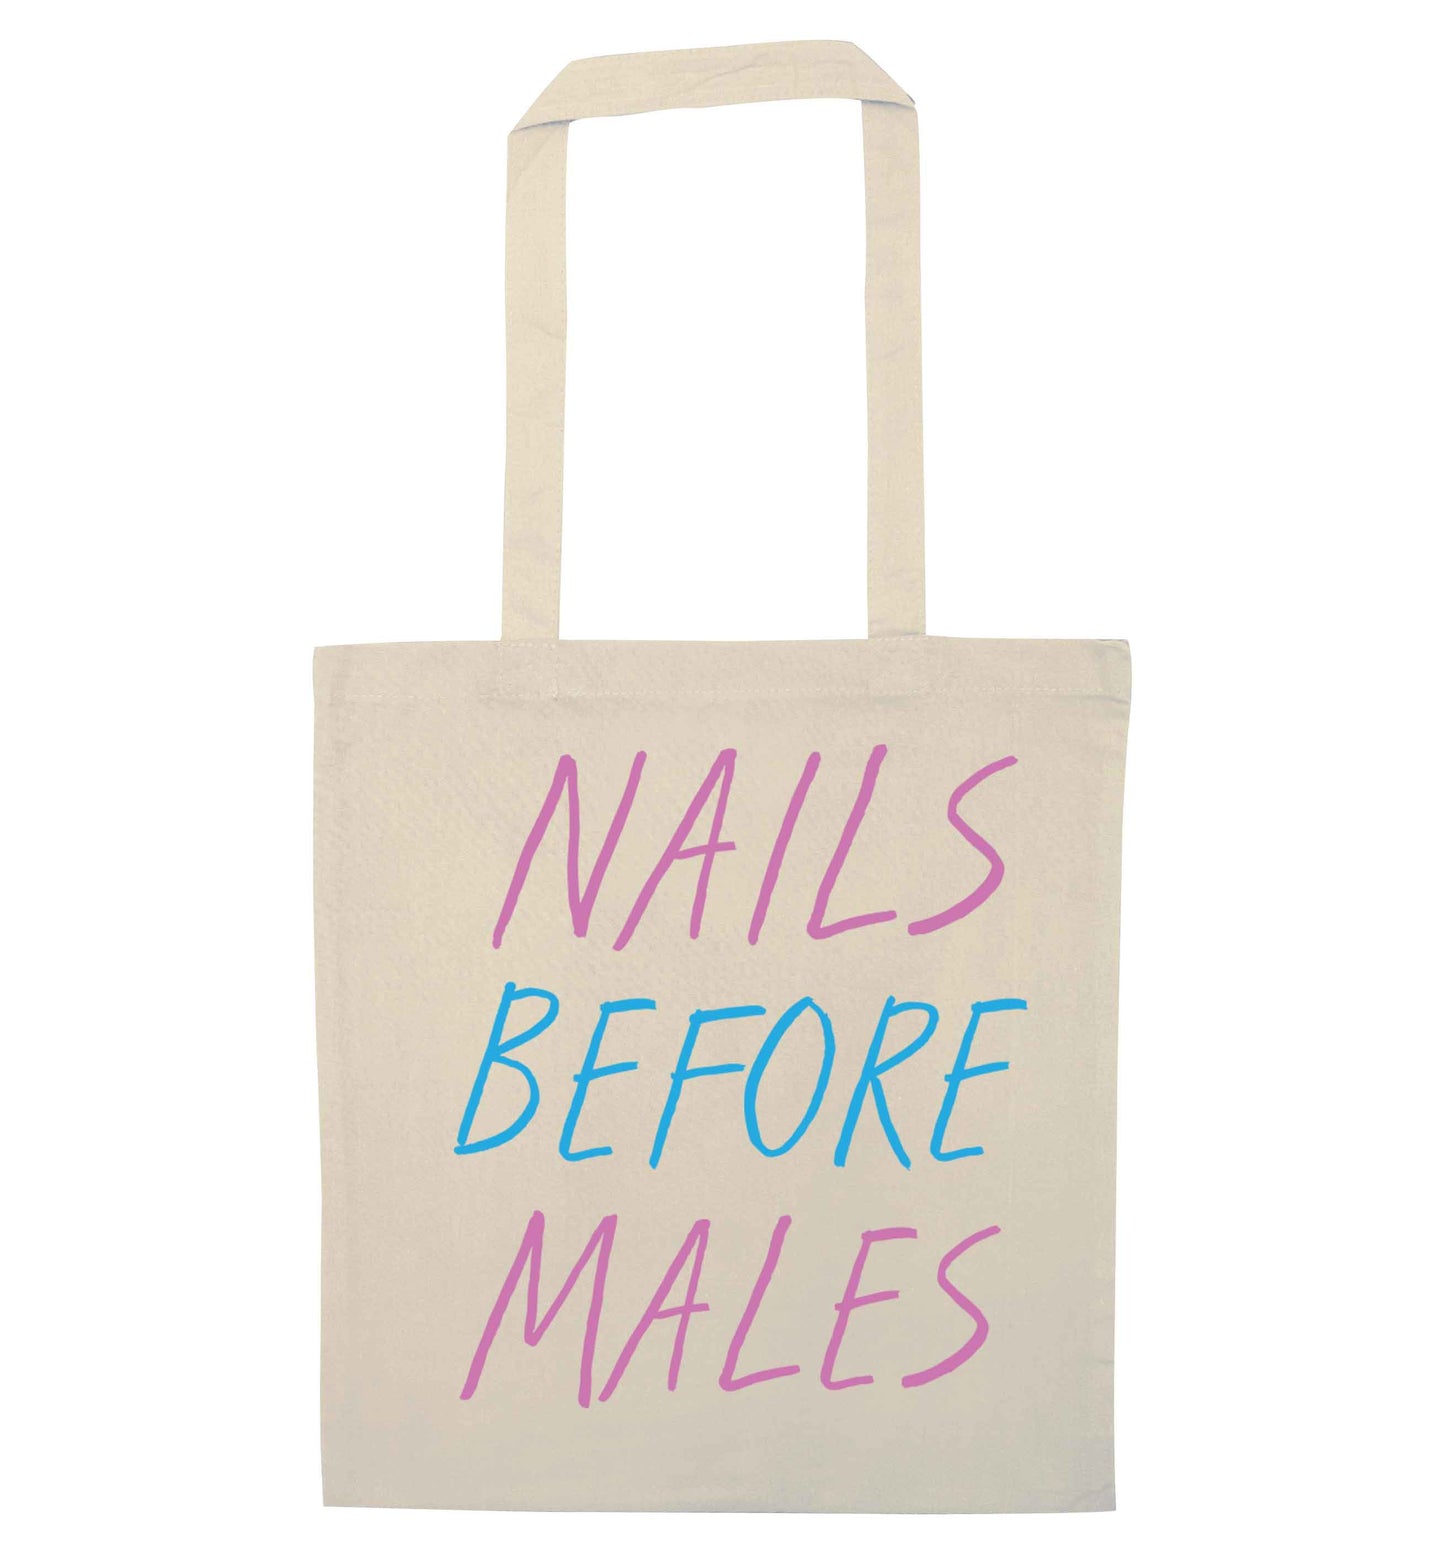 Nails before males natural tote bag